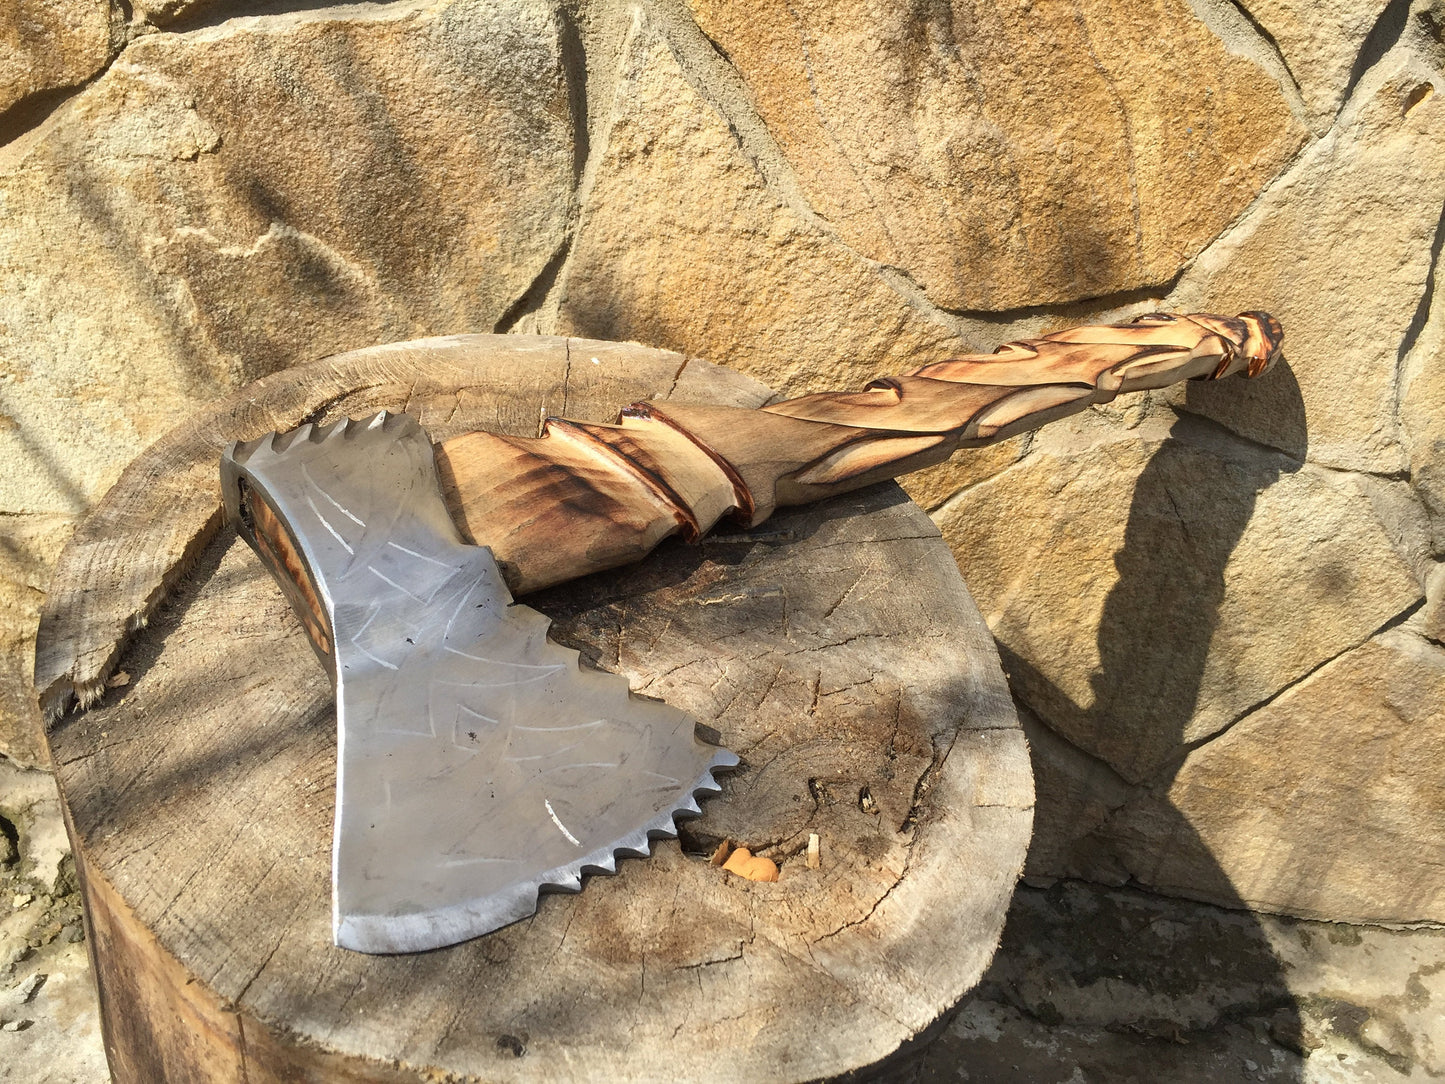 Viking axe, carving axe, carving hatchet, axe head etching, wood carving, carved wood, wood art, wood sculpture,  Damascus, felling axe, ax